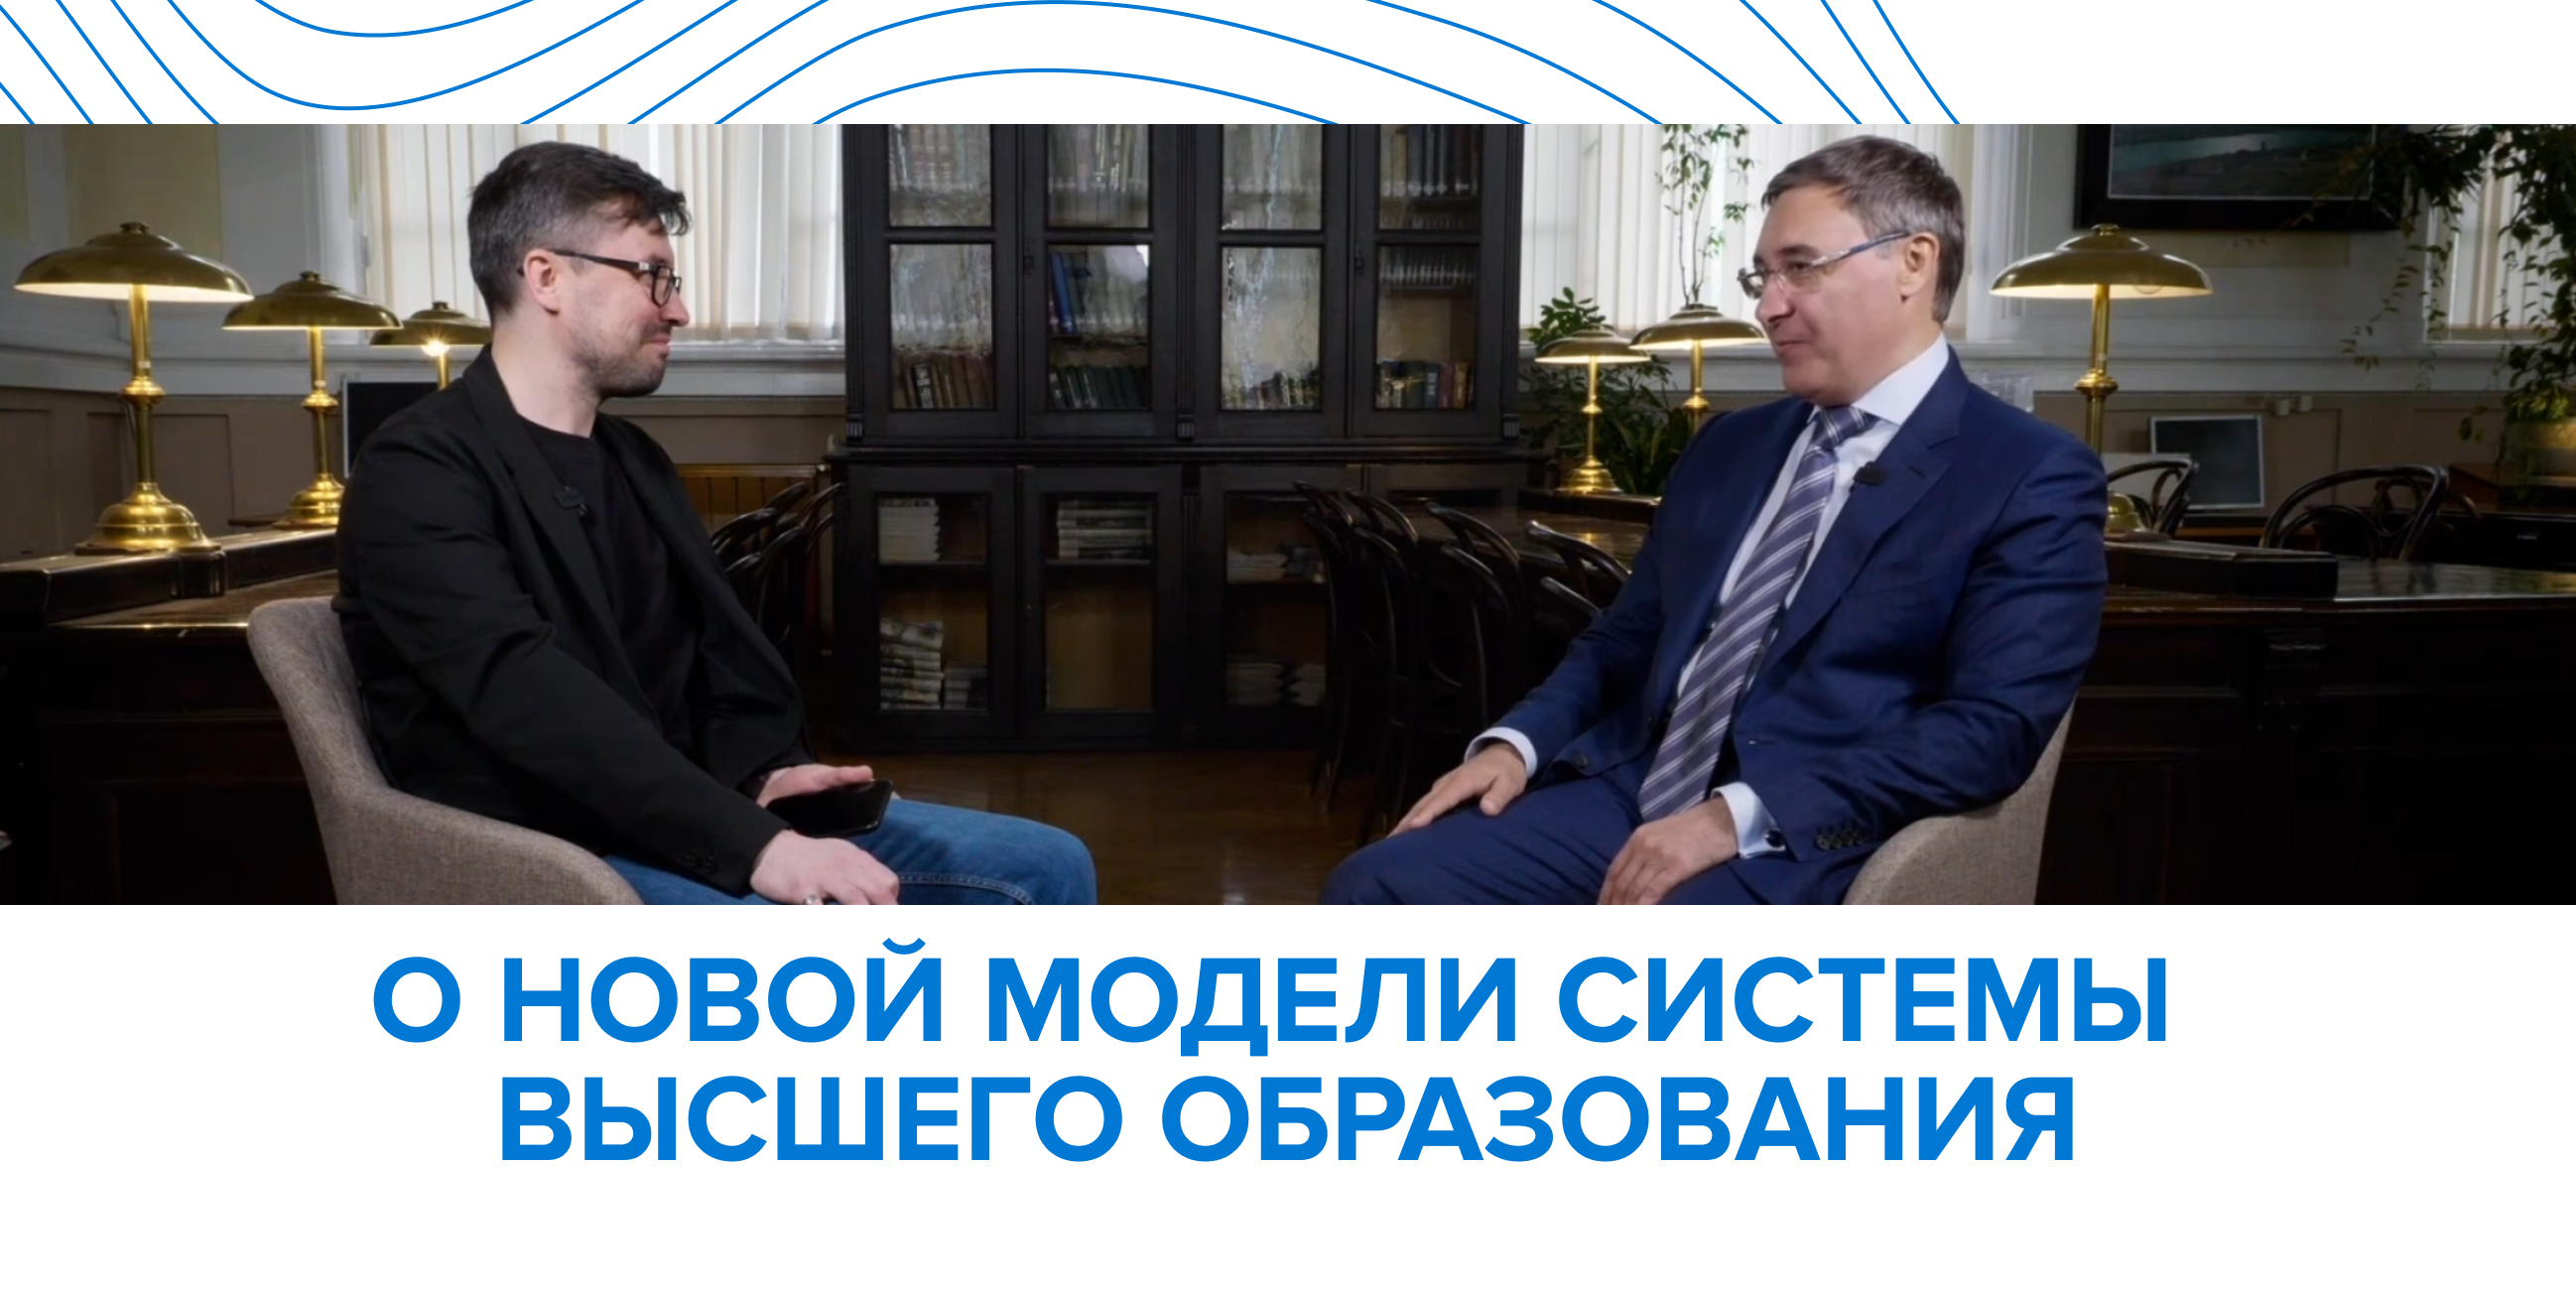 Валерий Фальков рассказал о переходе в новую систему высшего образования